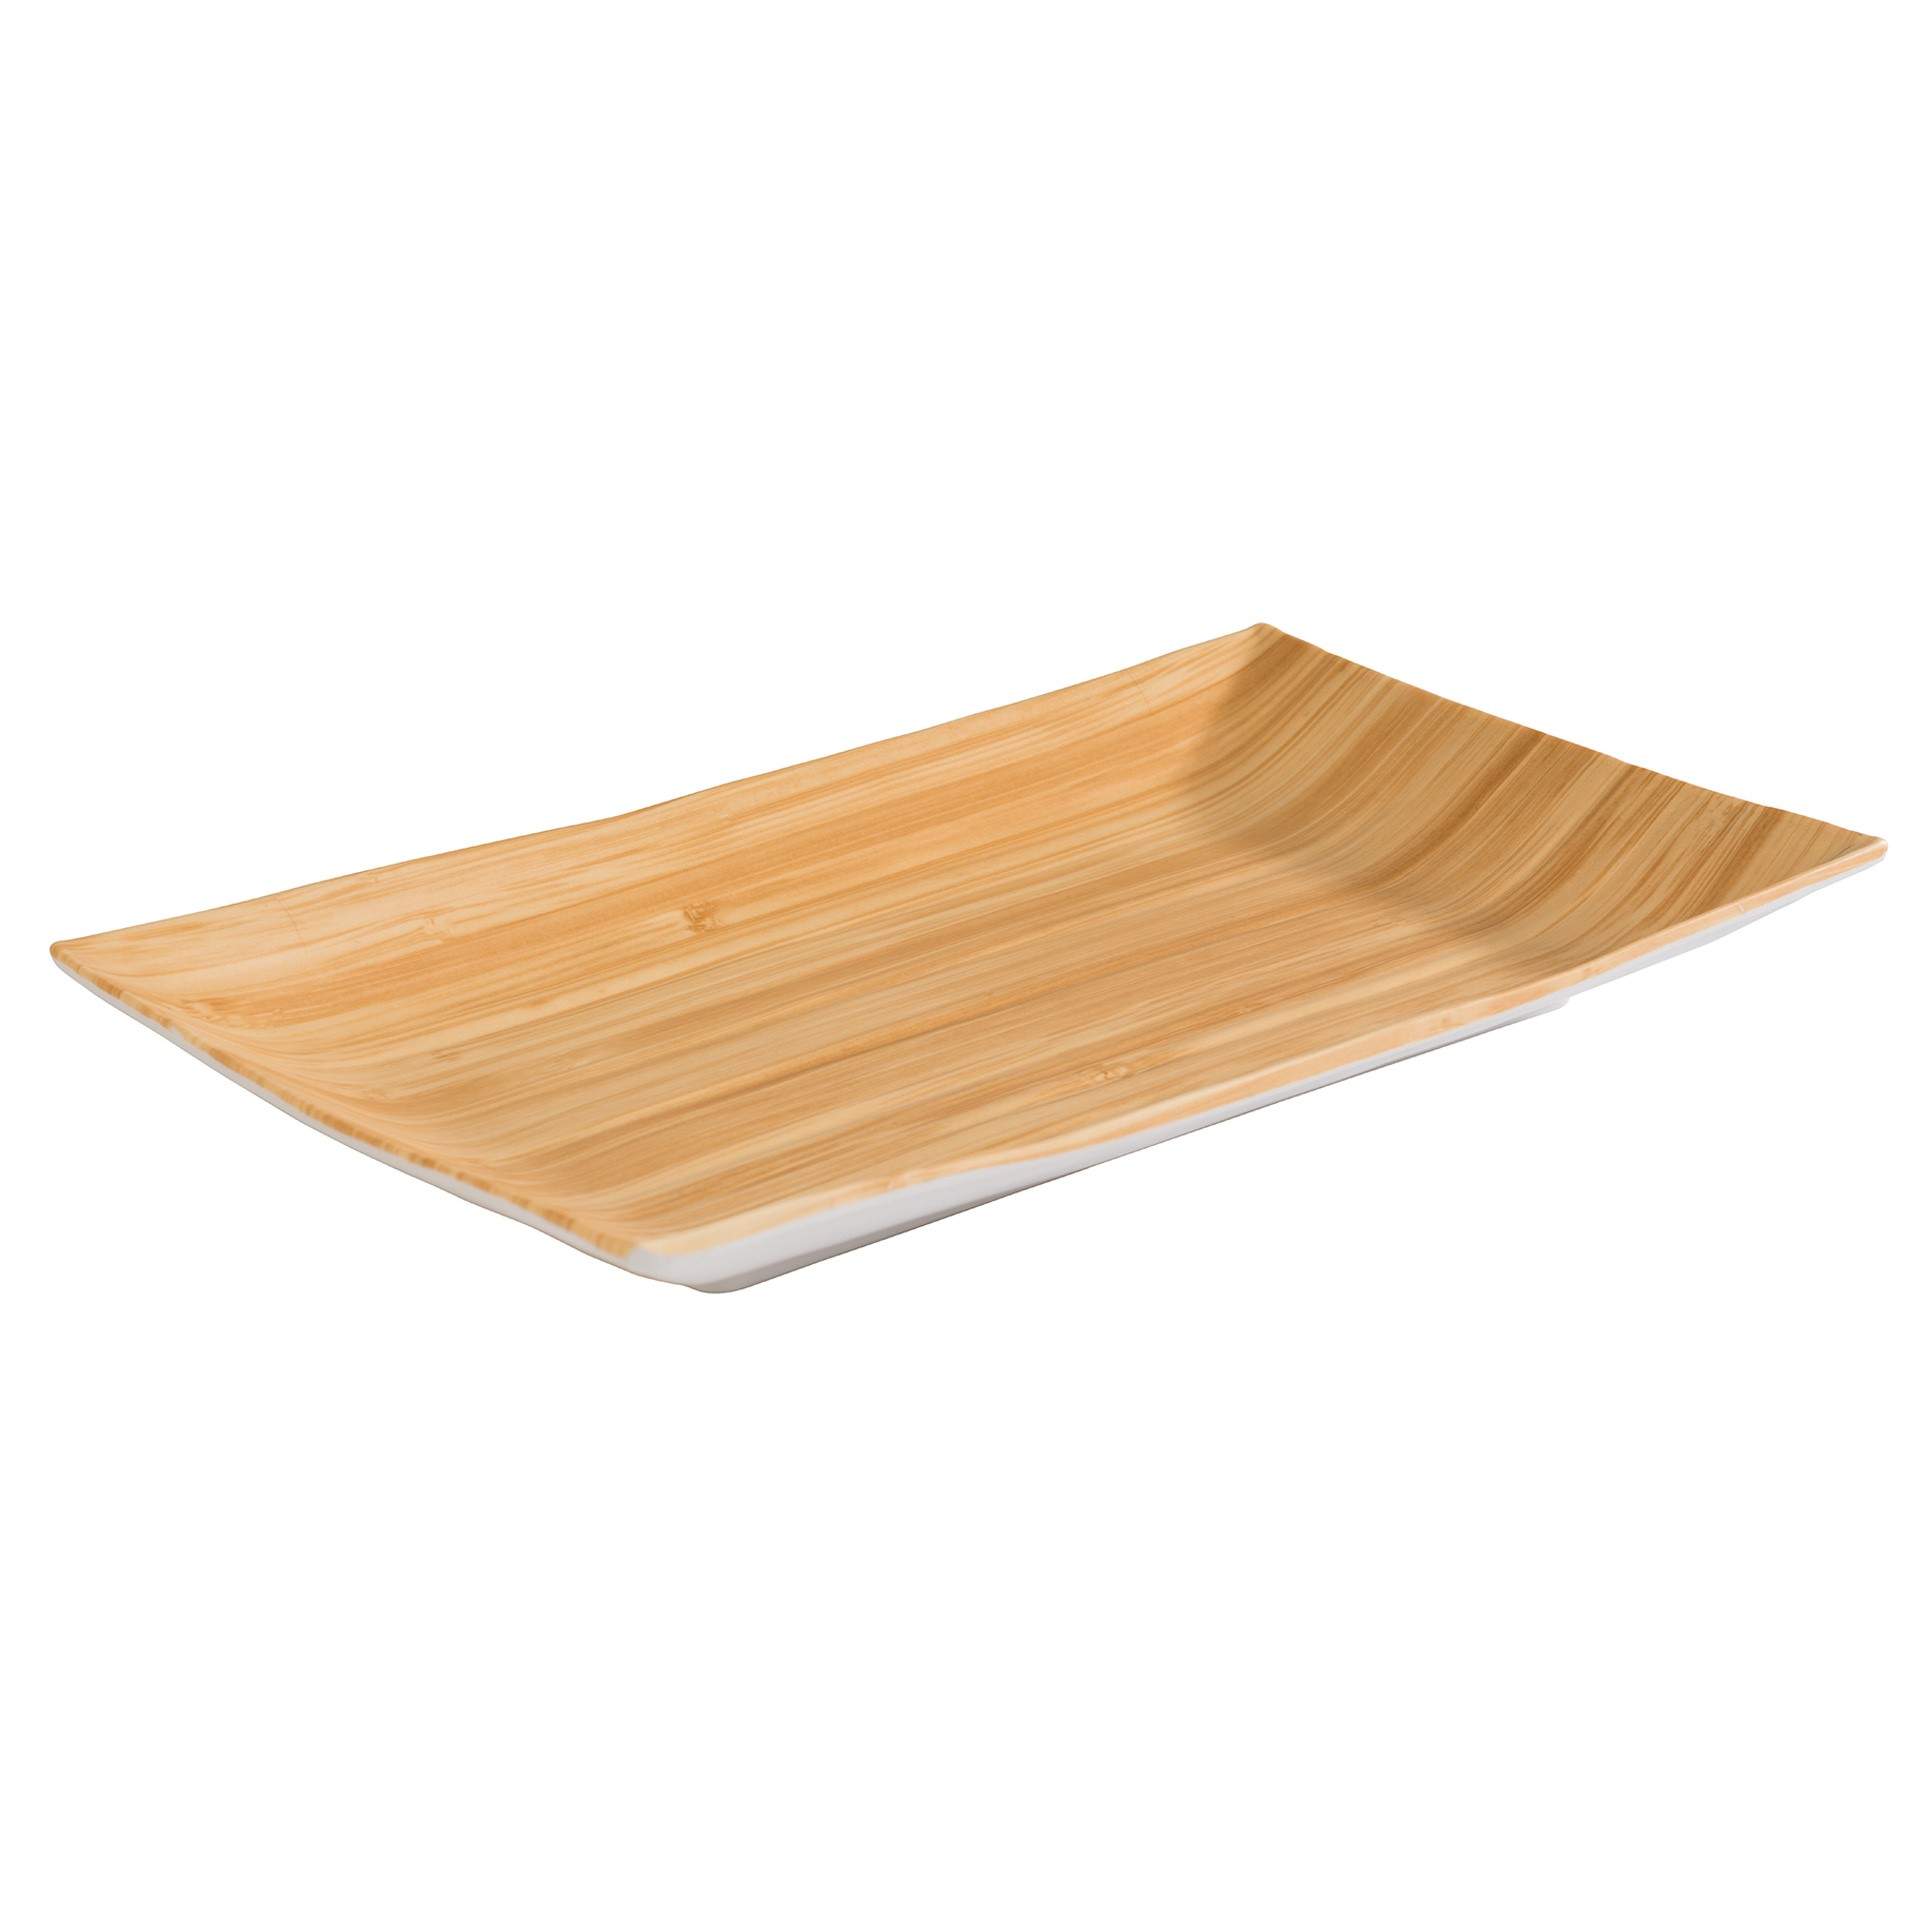 Tablett - Serie Bamboo - bambus / weiß - rechteckig - Abm. 24,5 x 15,5 x 3,0 cm - Melamin - 84807-B